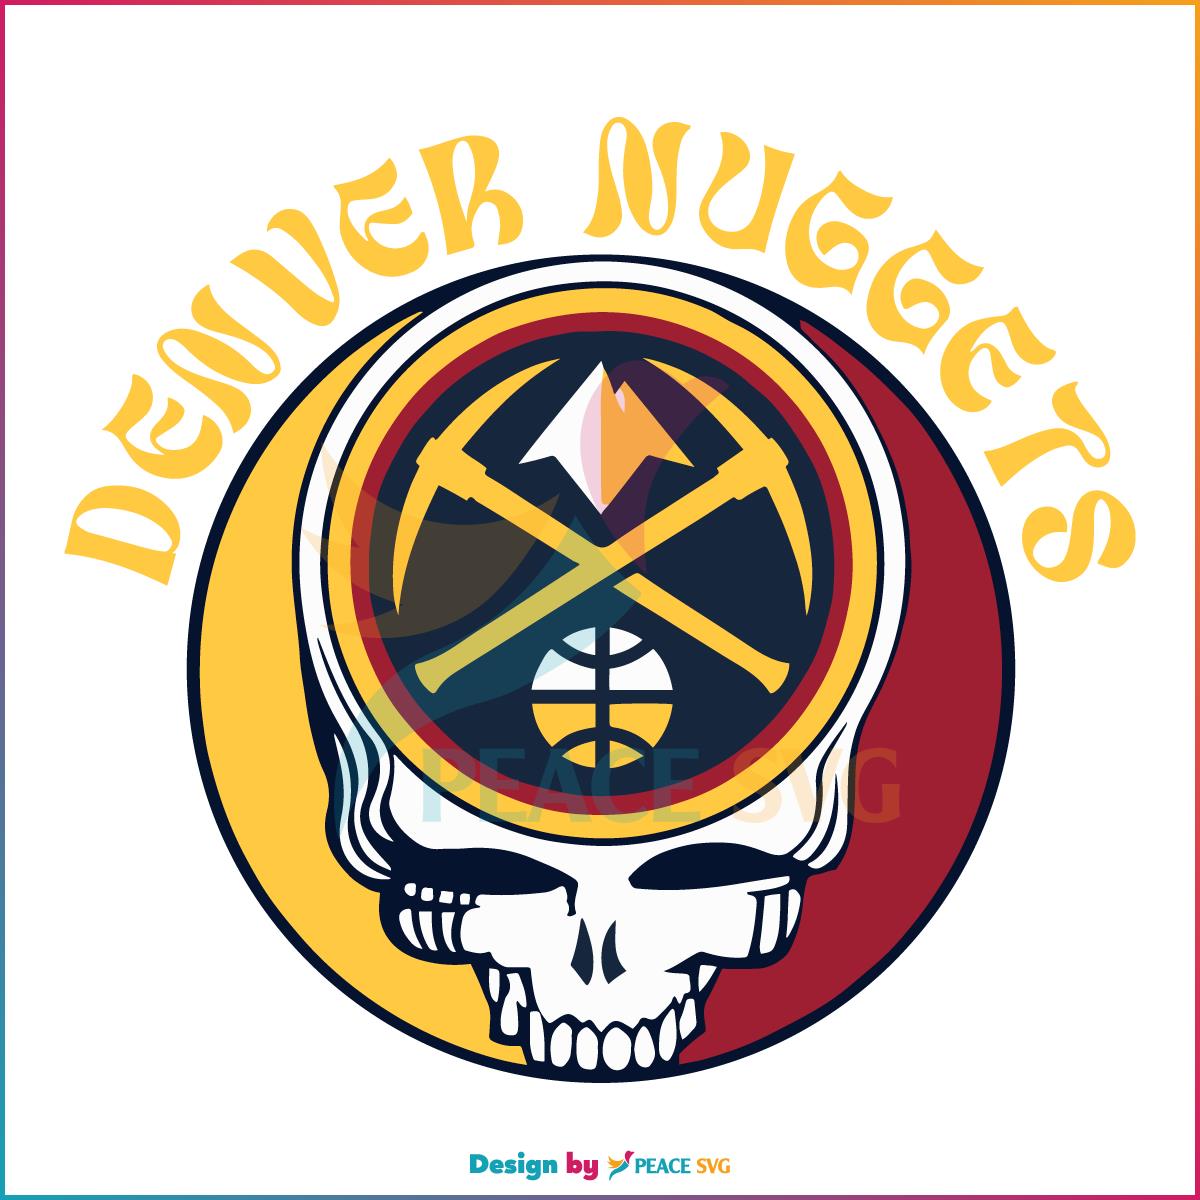 denver-nuggets-basketball-team-dead-logo-svg-cutting-file